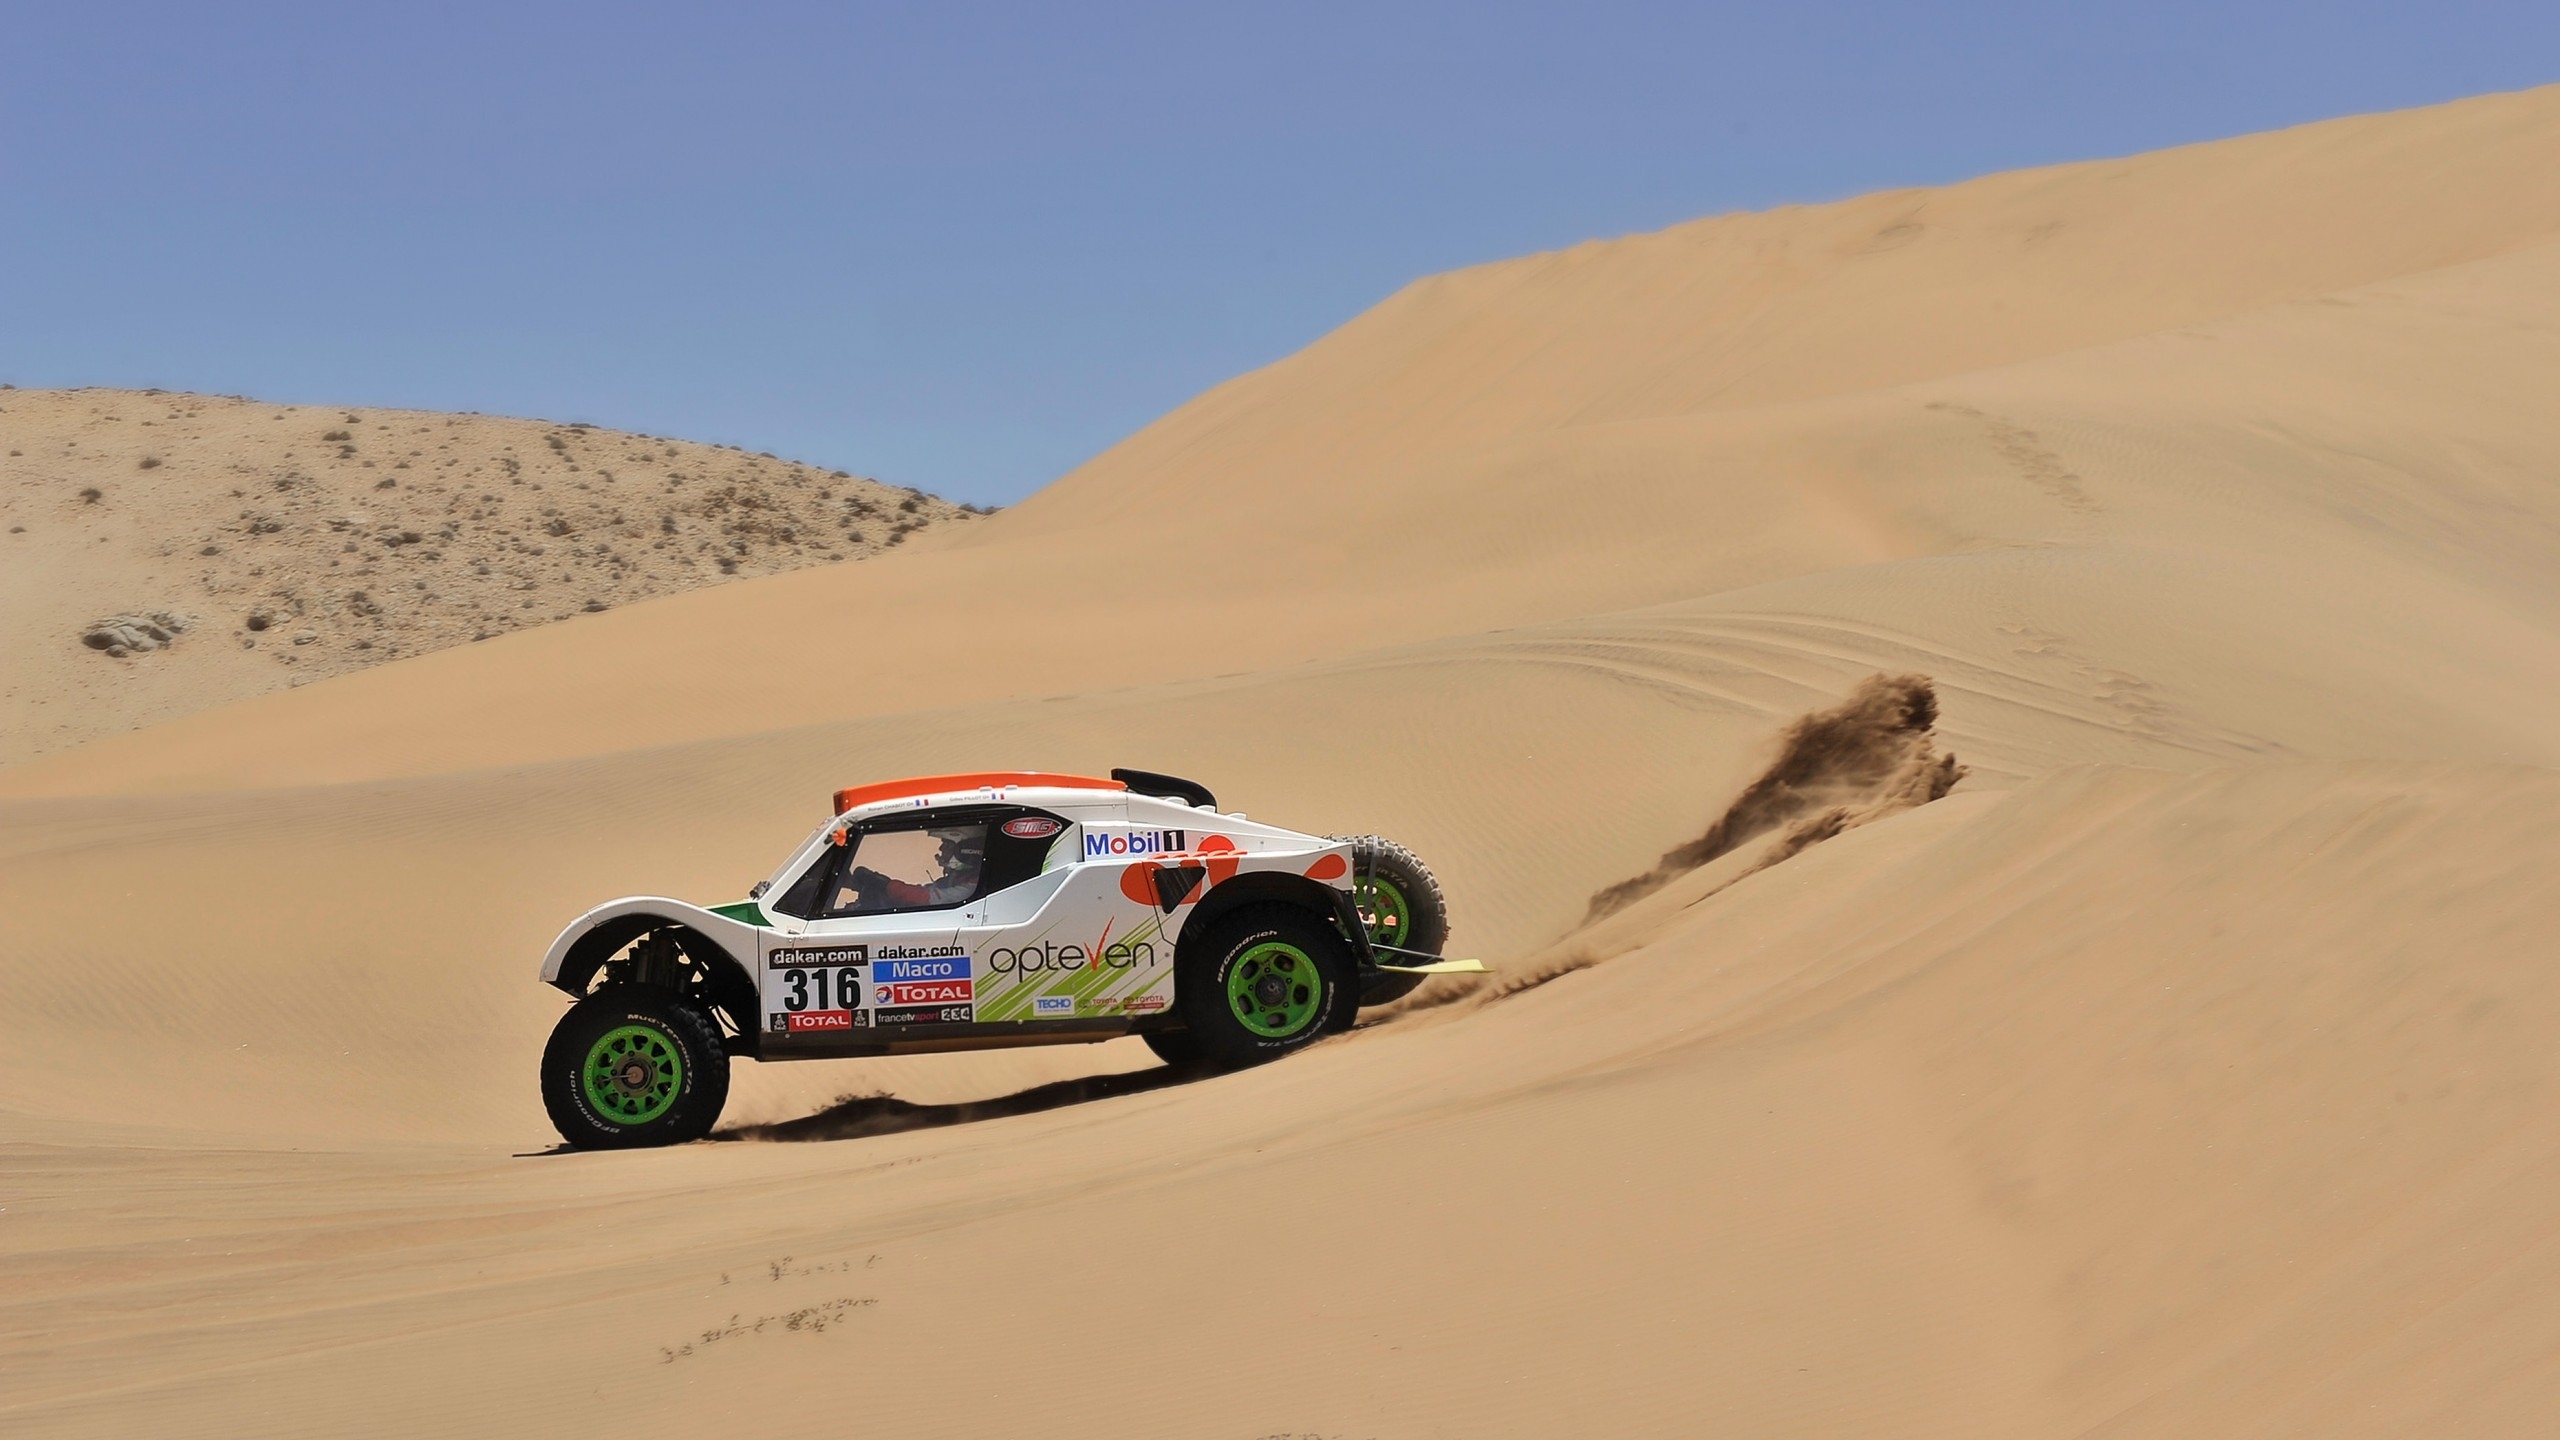 Rally Desert Race for 2560x1440 HDTV resolution